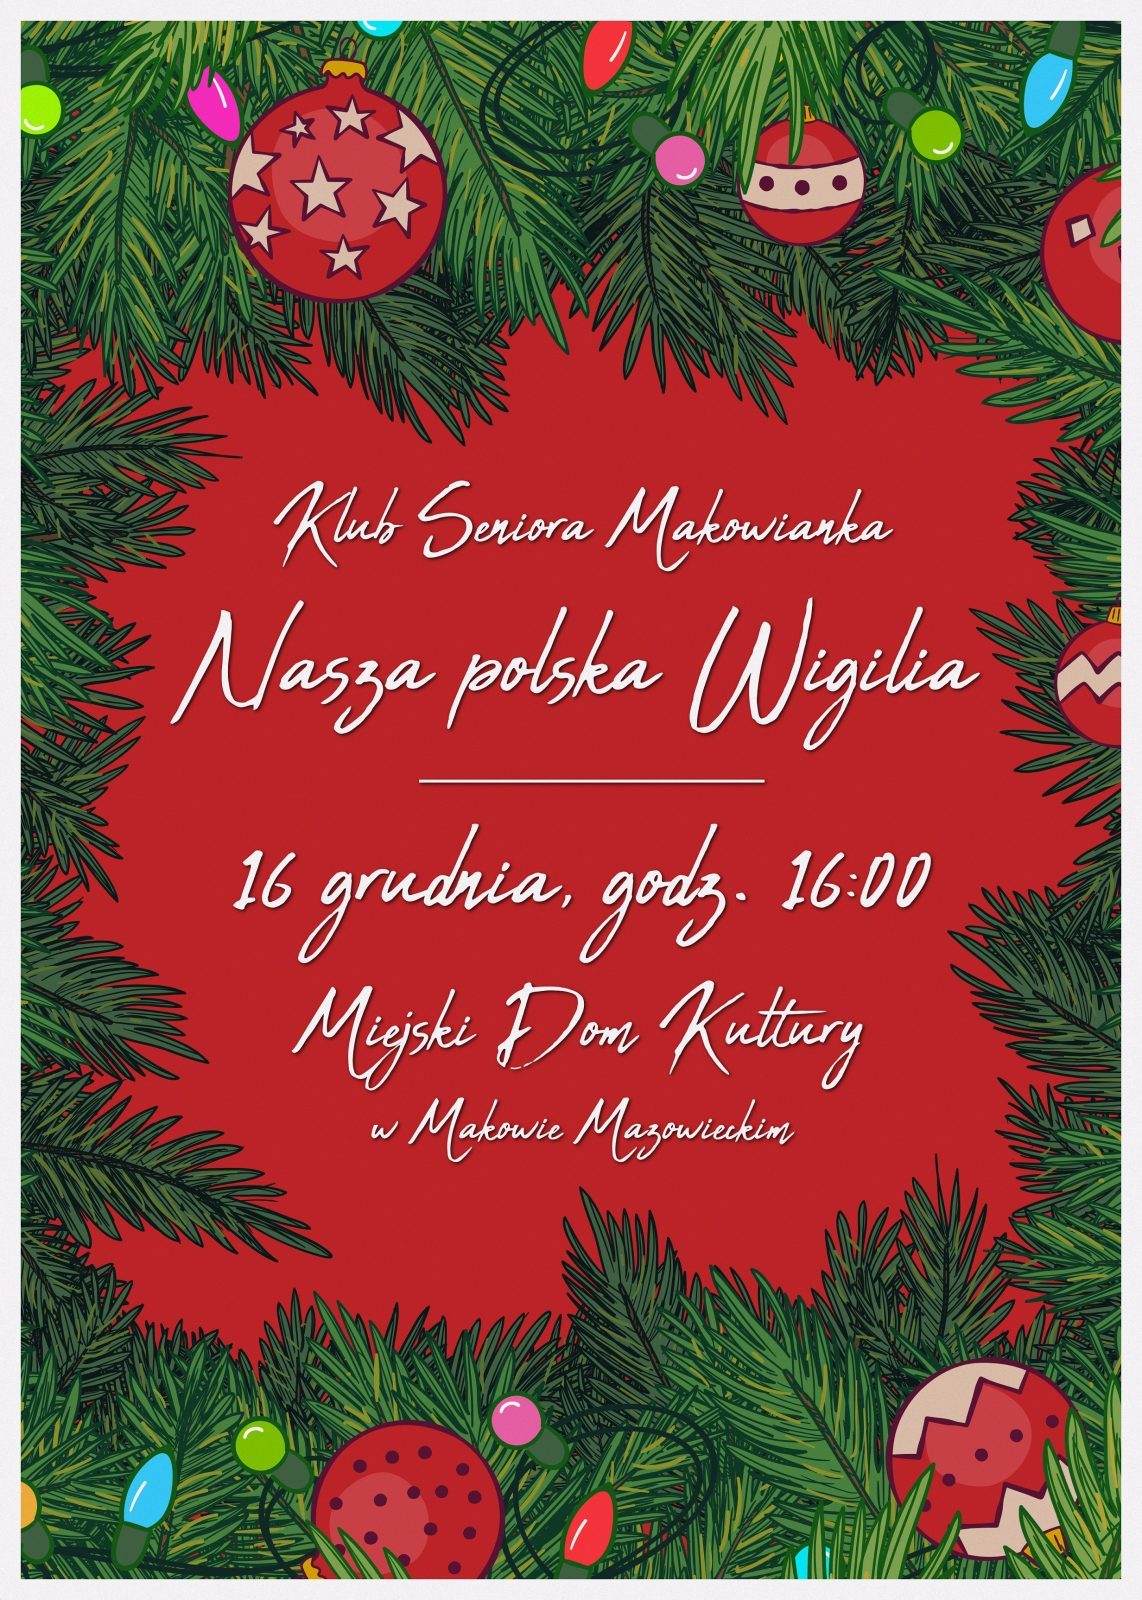 Plakat. Klub seniora Makowianka zaprasza na przedstawienie pt. Nasza Polska Wigilia. 16 grudnia godzina 16:00